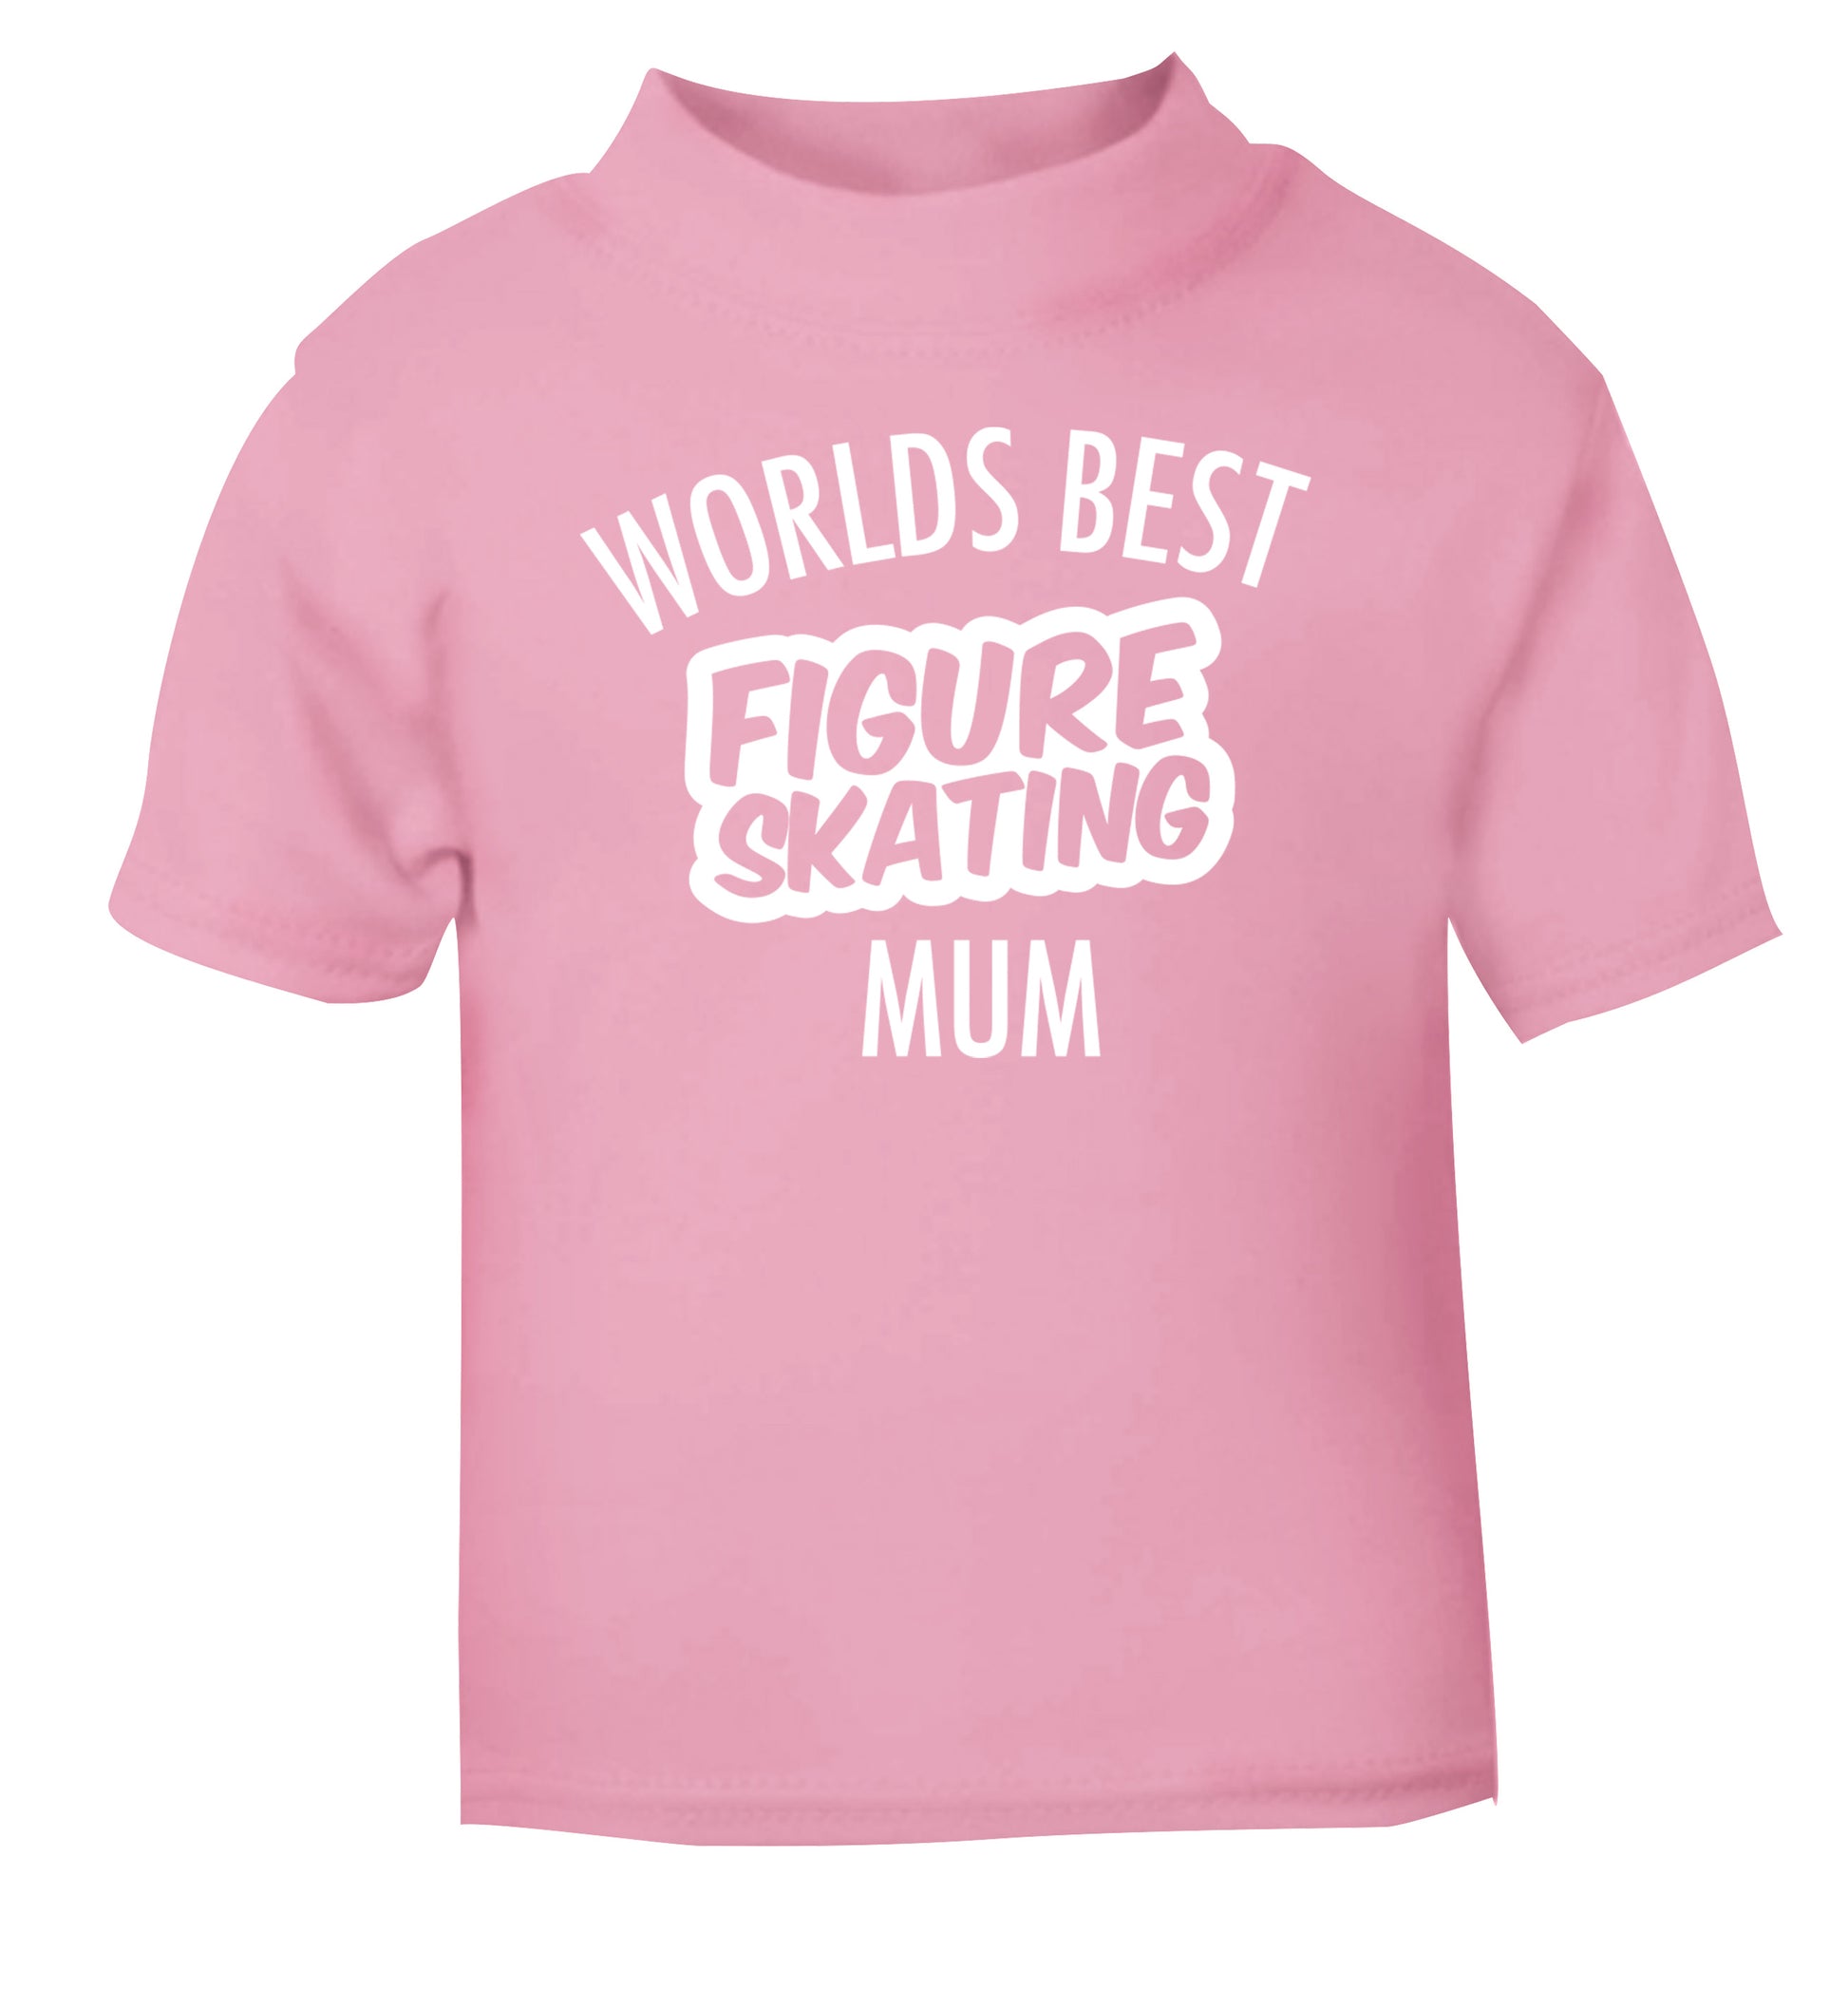 Worlds best figure skating mum light pink Baby Toddler Tshirt 2 Years